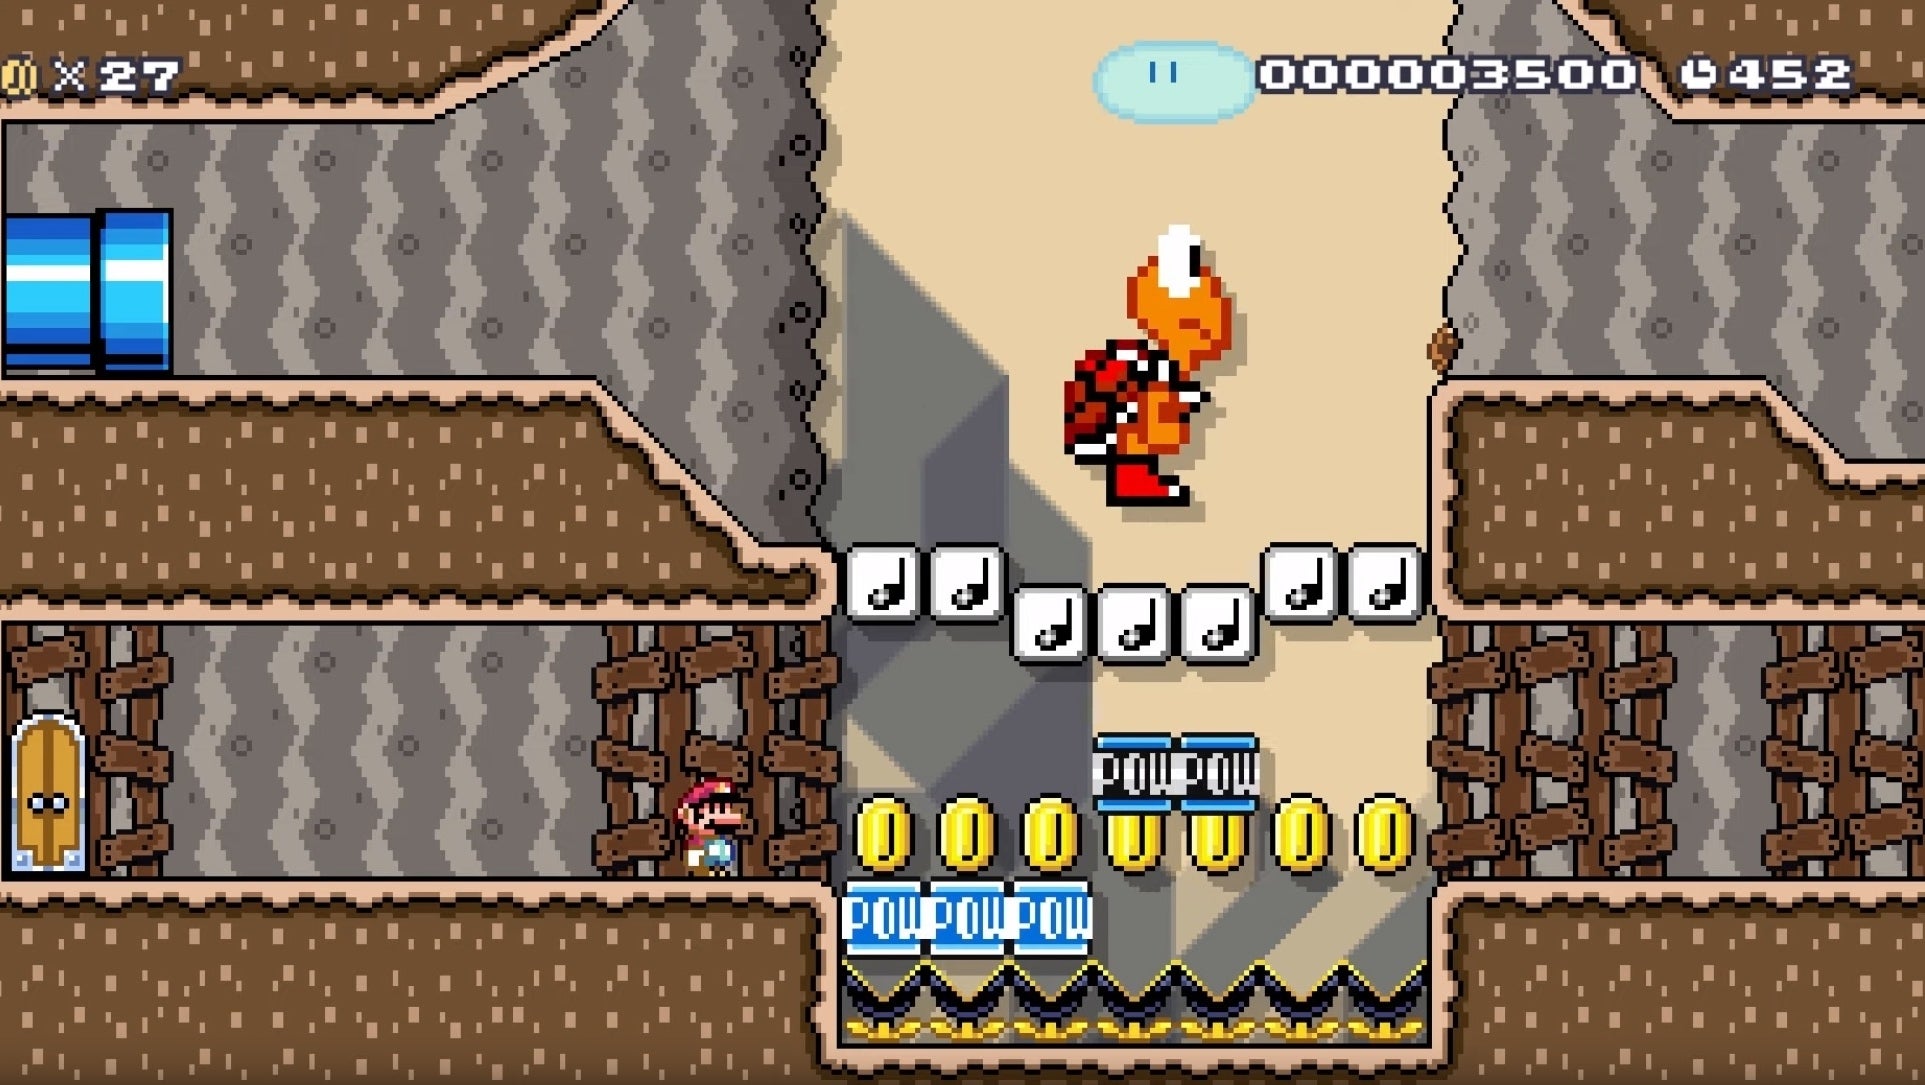 Bilder zu Echte Freunde: Dieser Level von Mario Maker 2 auf der Switch beweist, dass Mario und Koopa keine Feinde sein müssen